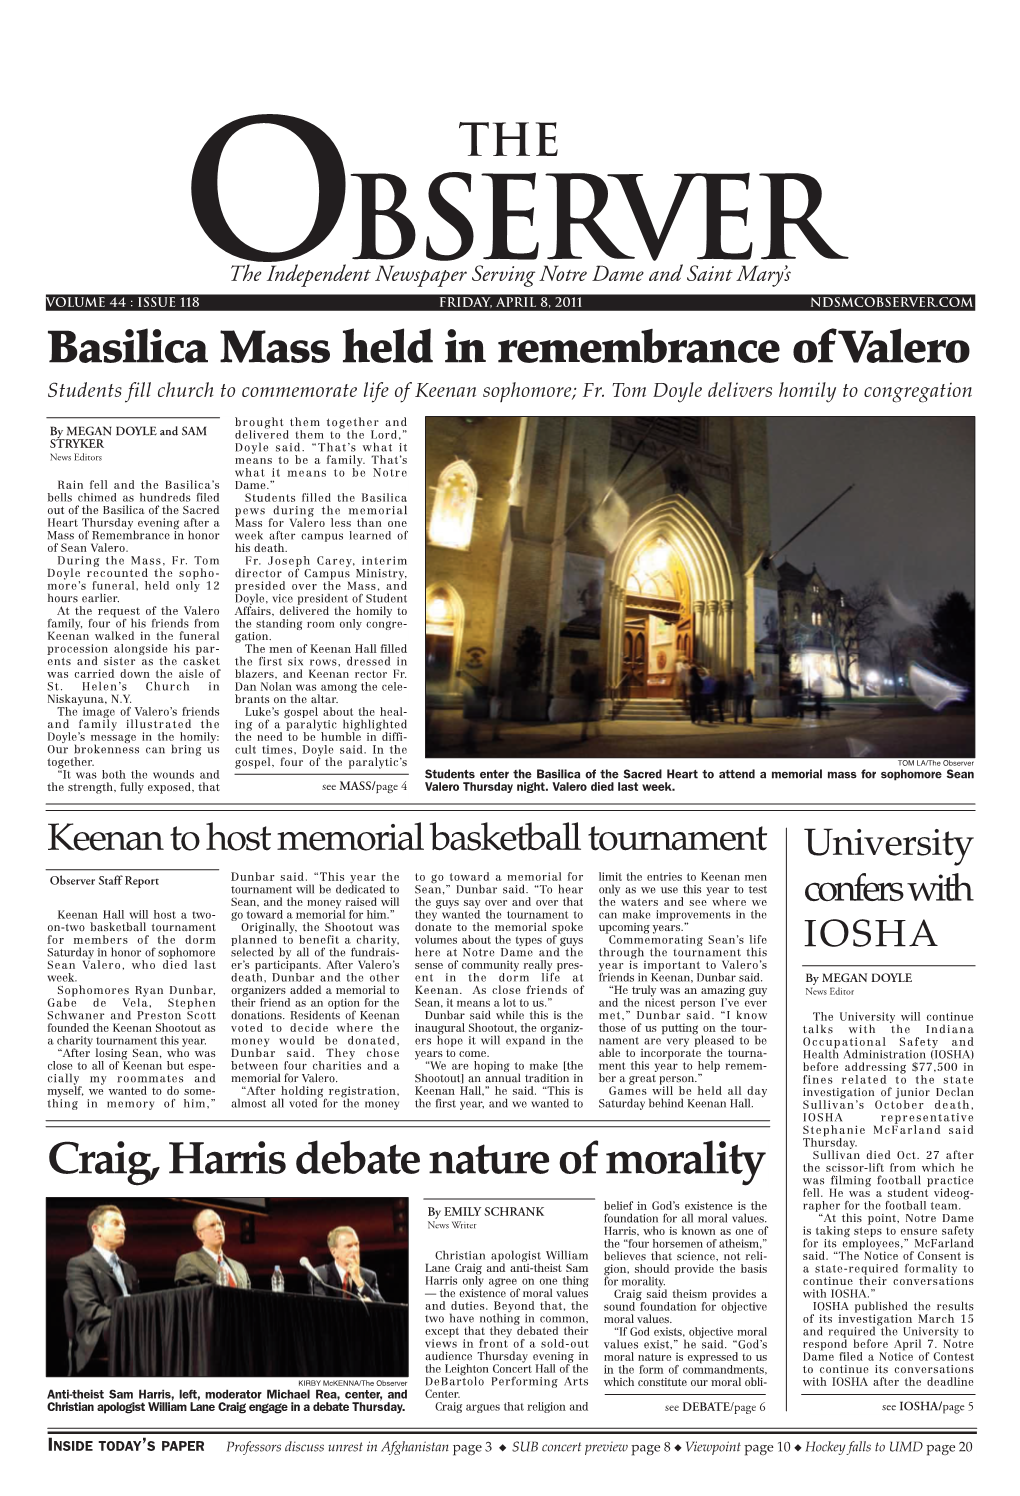 Basilica Mass Held in Remembrance of Valero Craig, Harris Debate Nature